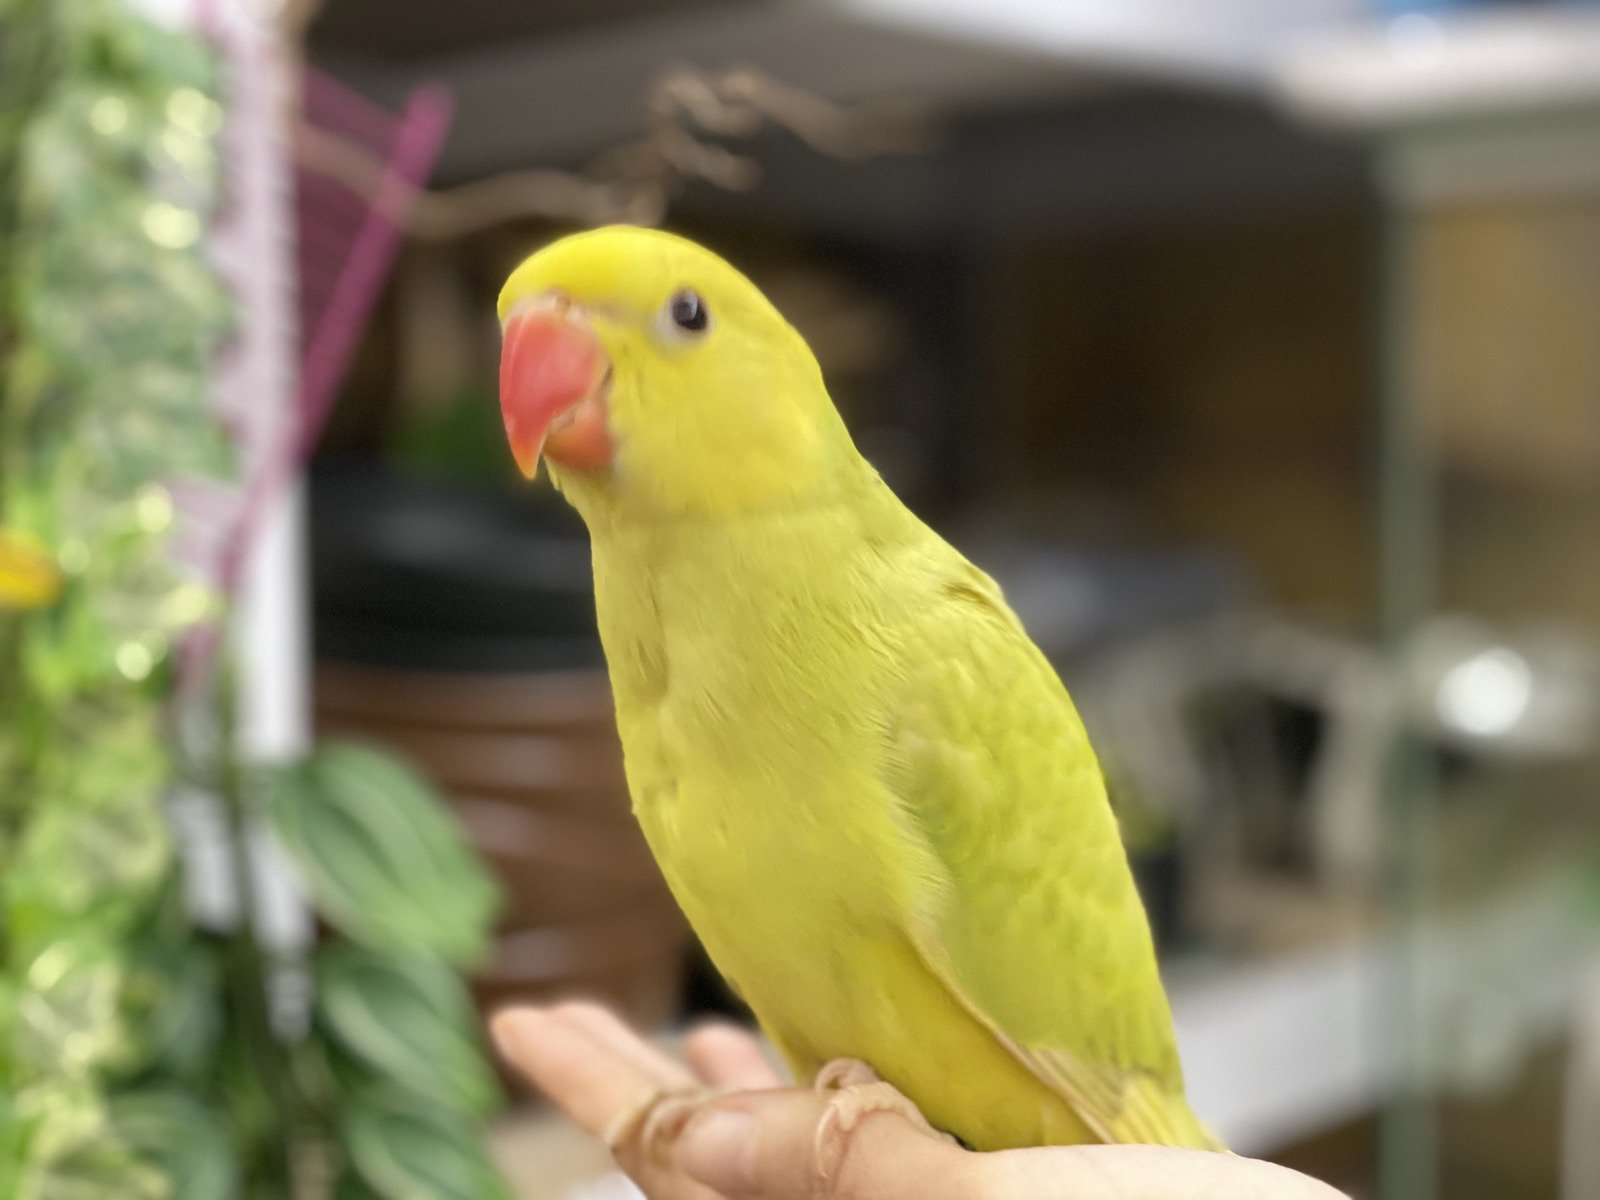 Ожереловый попугай Крамера желто-салатовый, малыши